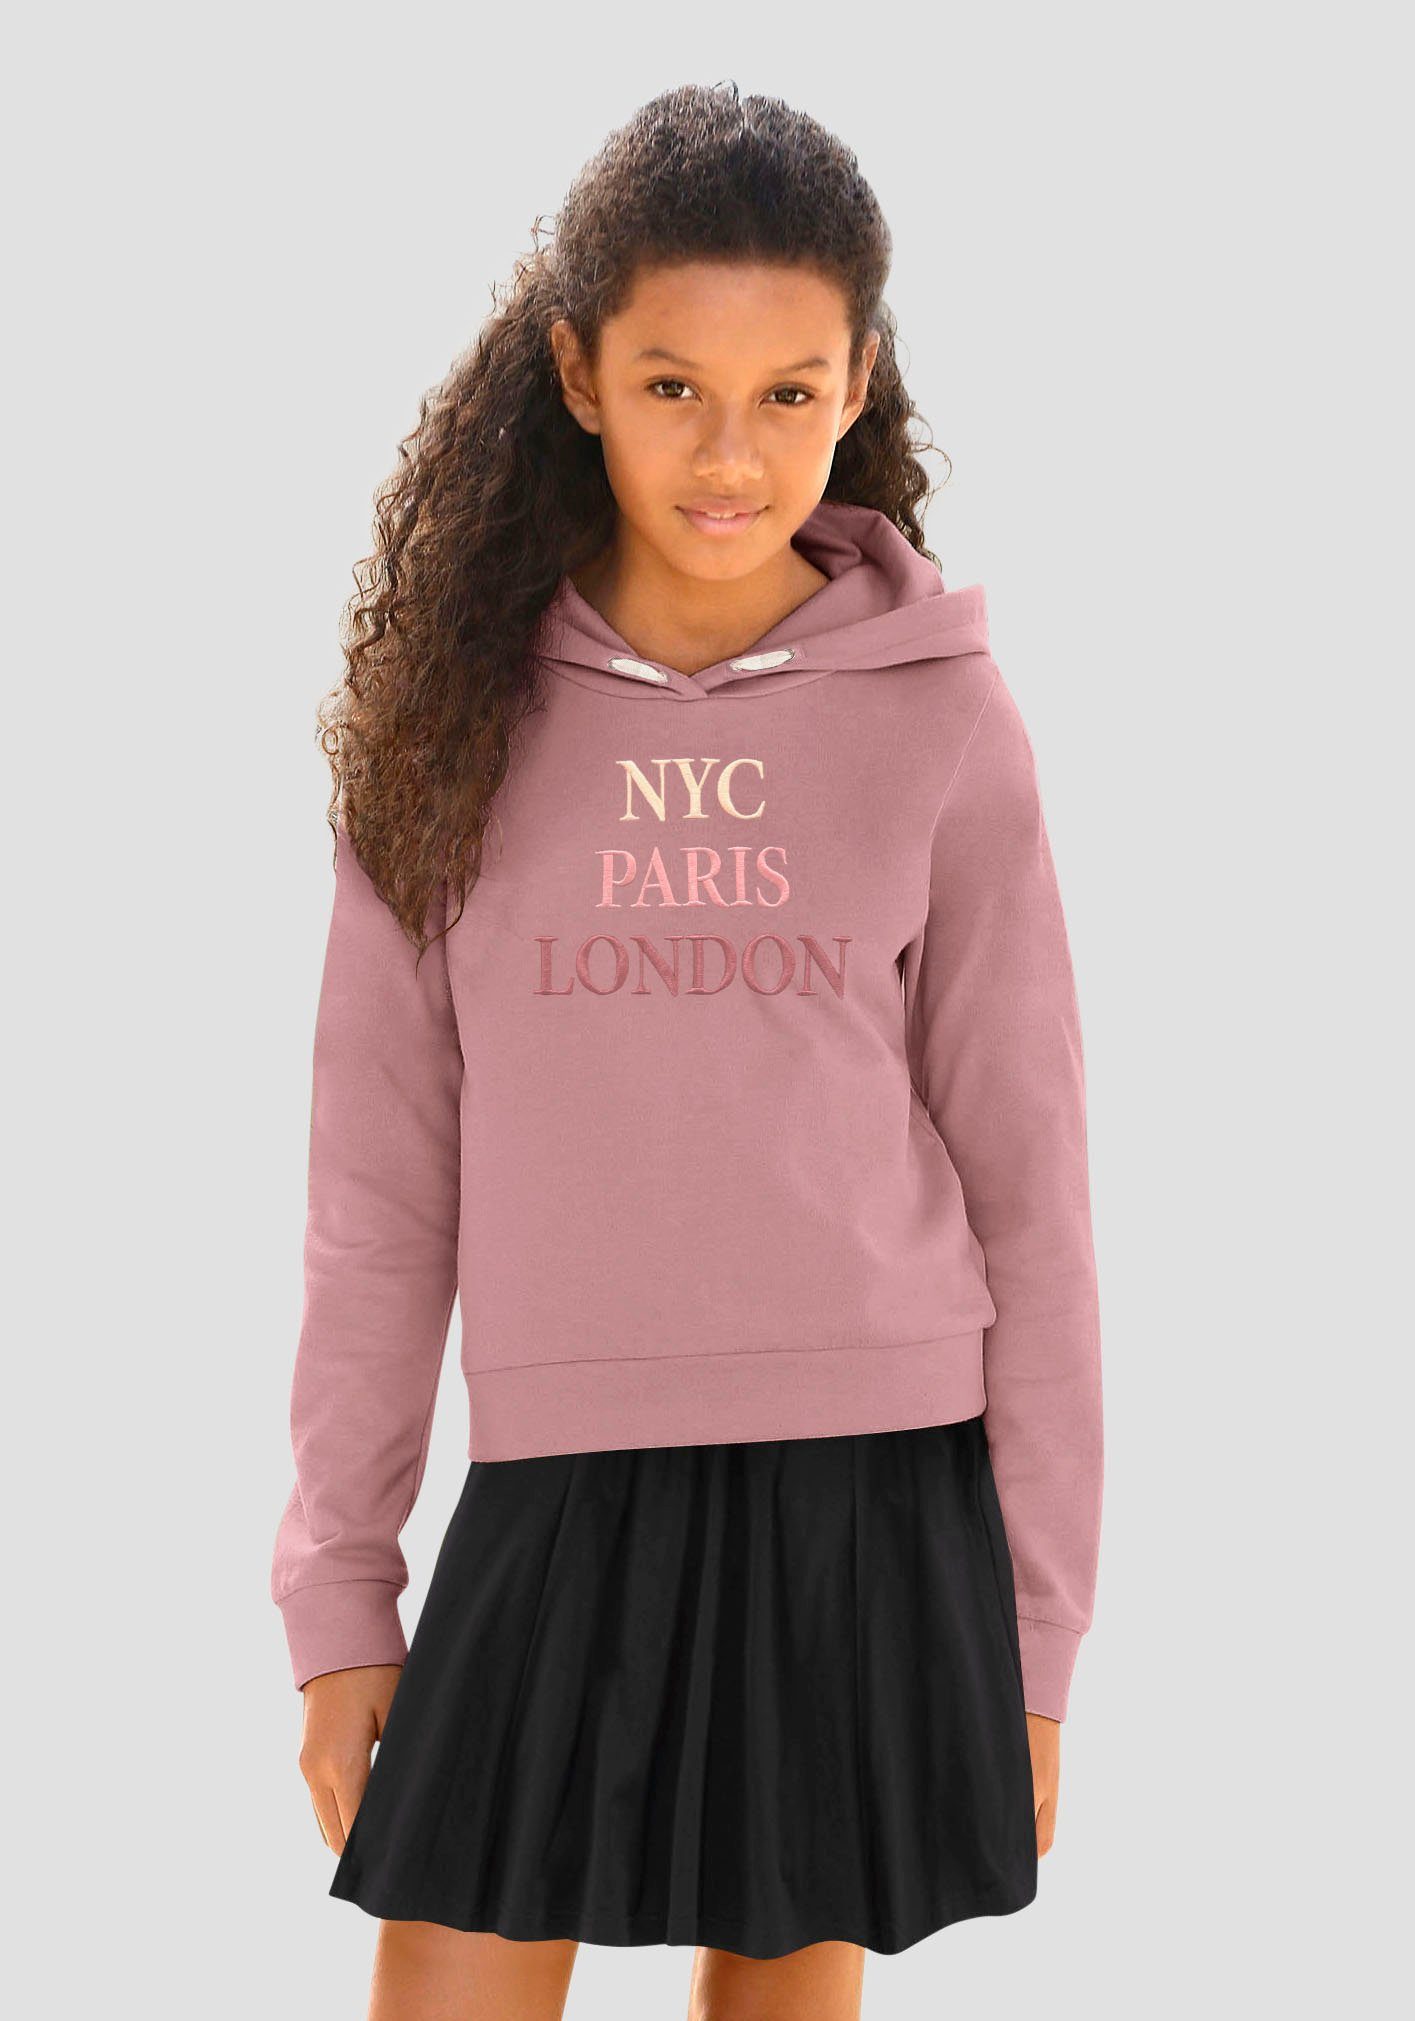 Beeilen Sie sich in den Laden! mit Paris London Kapuzensweatshirt NYC KIDSWORLD Stickerei